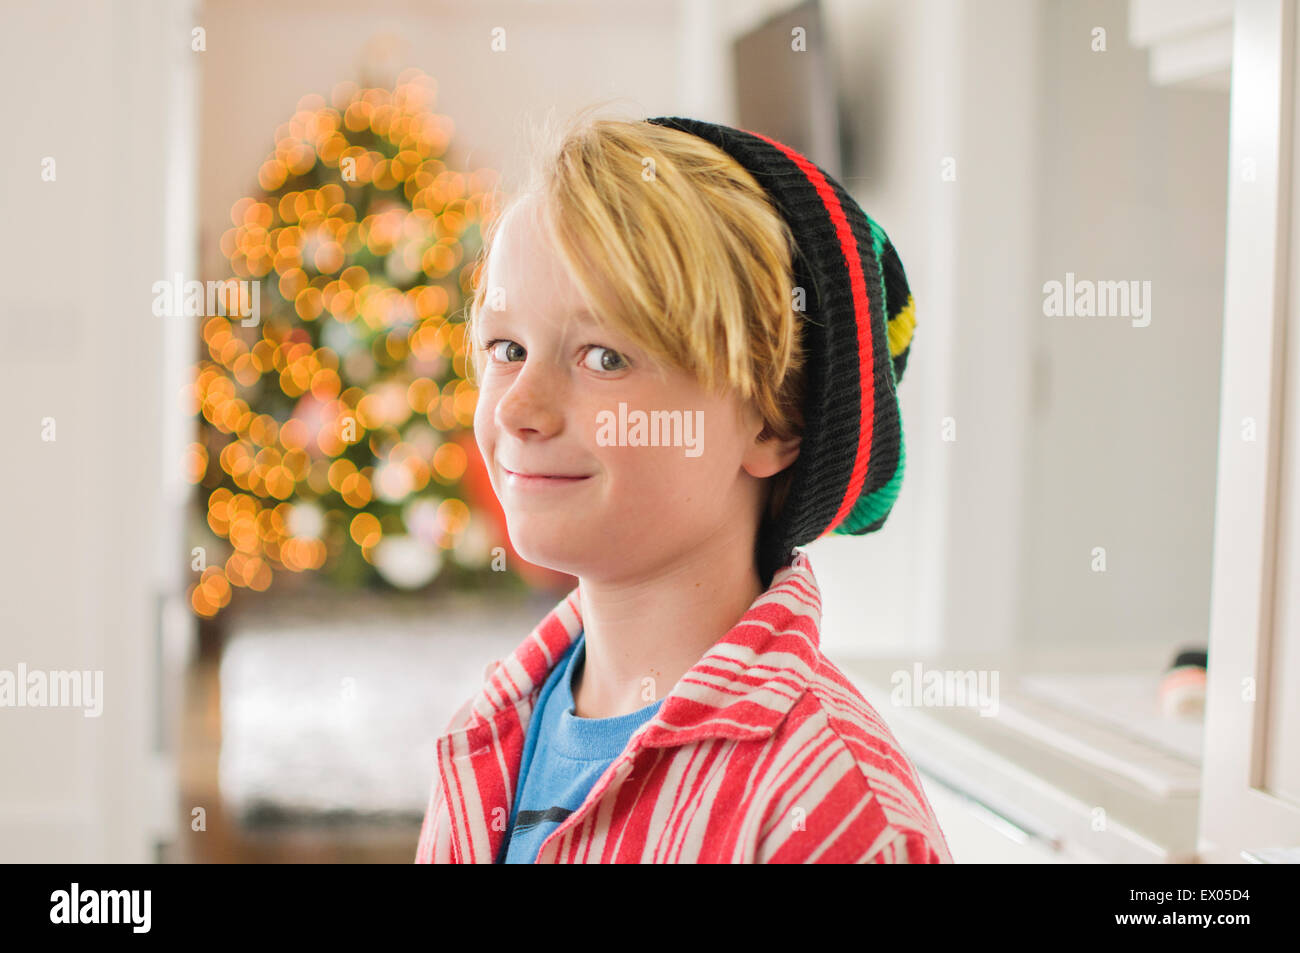 Portrait of boy wearing knit hat looking sideways Stock Photo